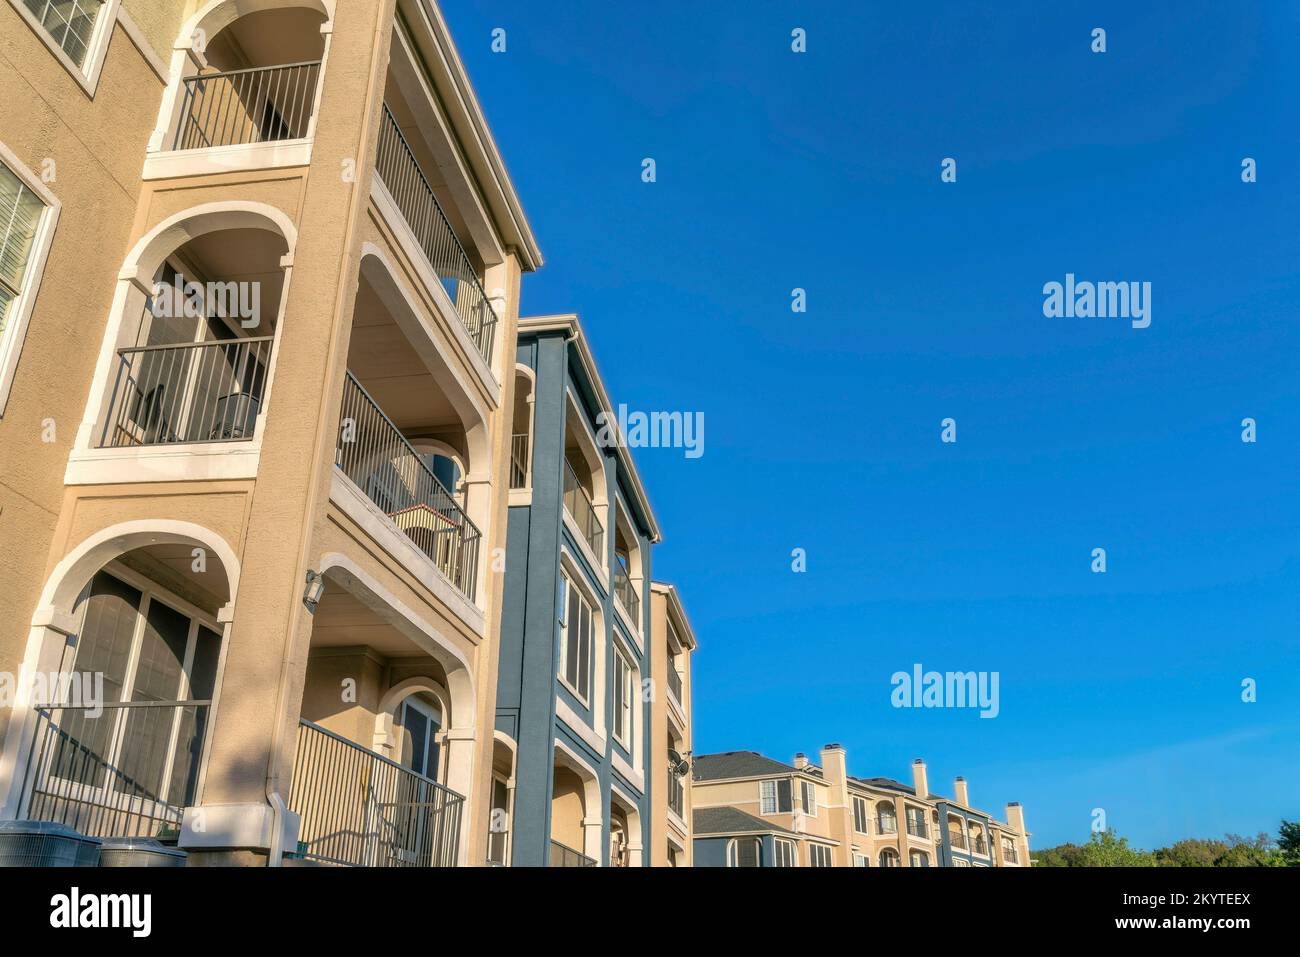 Austin, Texas - Flachblick auf einen Apartmentkomplex mit Balkonen. Außenansicht eines Wohngebäudes mit beigefarbenen, blauen Wänden und weißen Verzierungen. Stockfoto